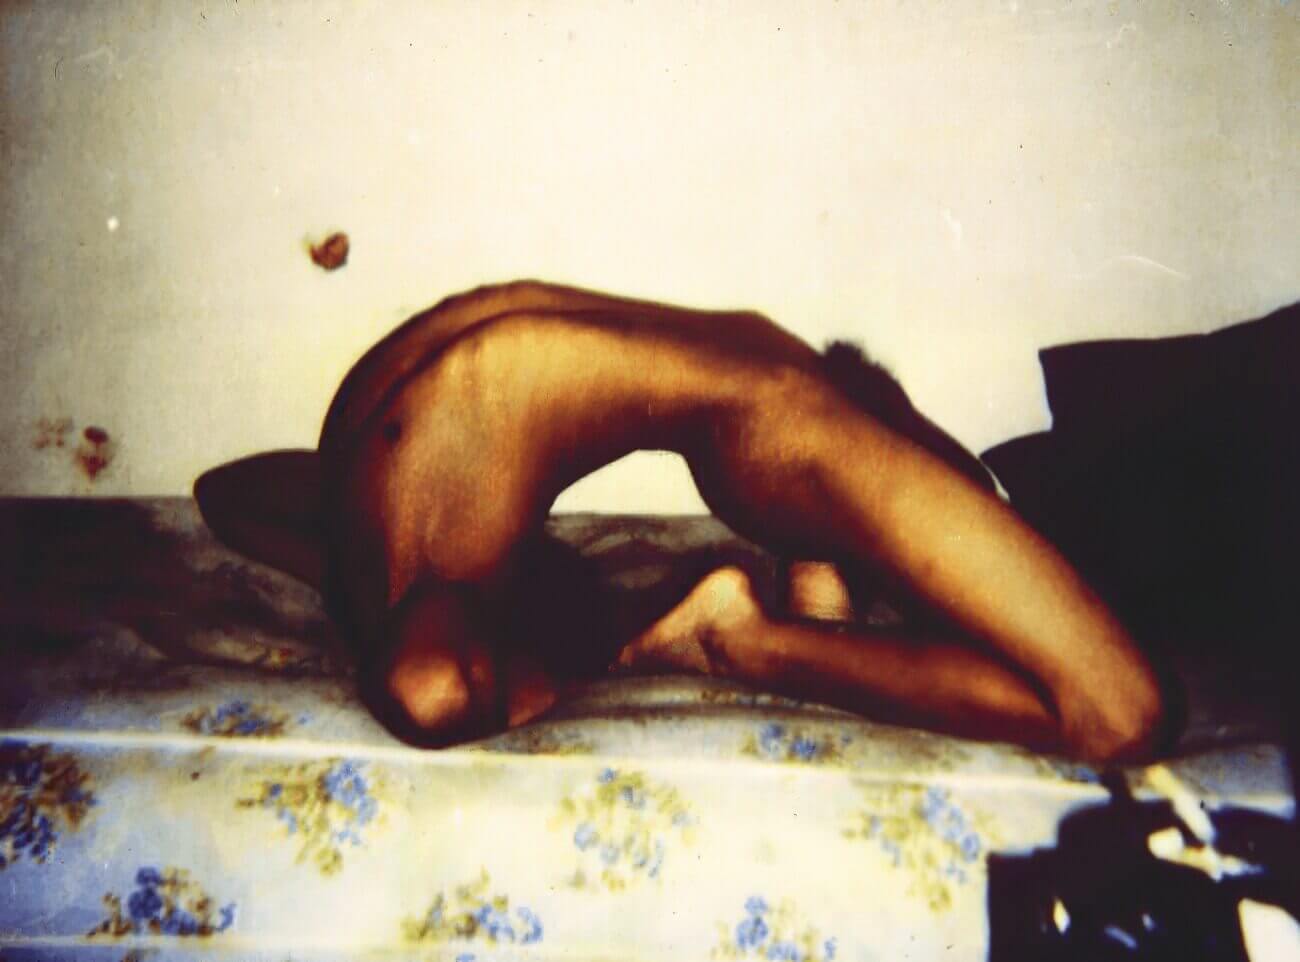 Jeffrey Dahmer's Polaroid